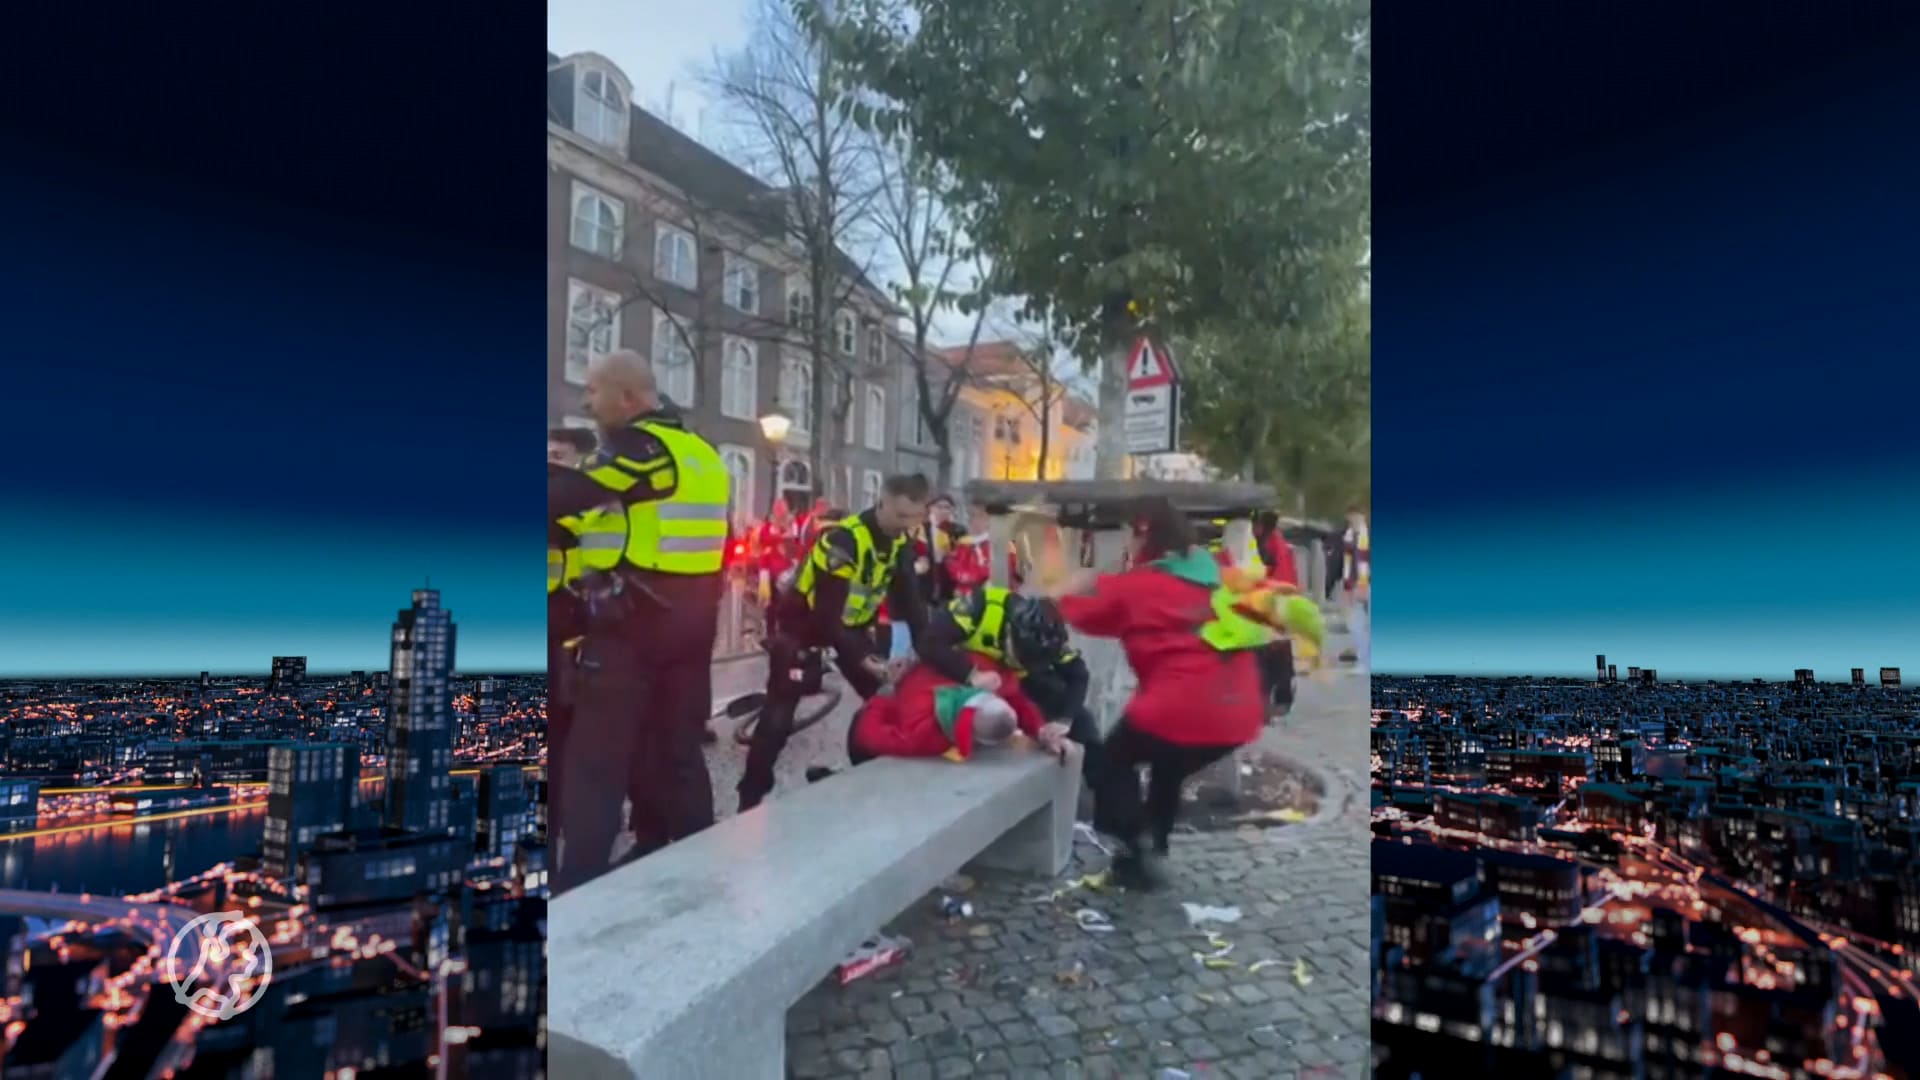 Politie en carnavalsorkest krijgen het met elkaar aan de stok: vrouw slaat agent met trompet